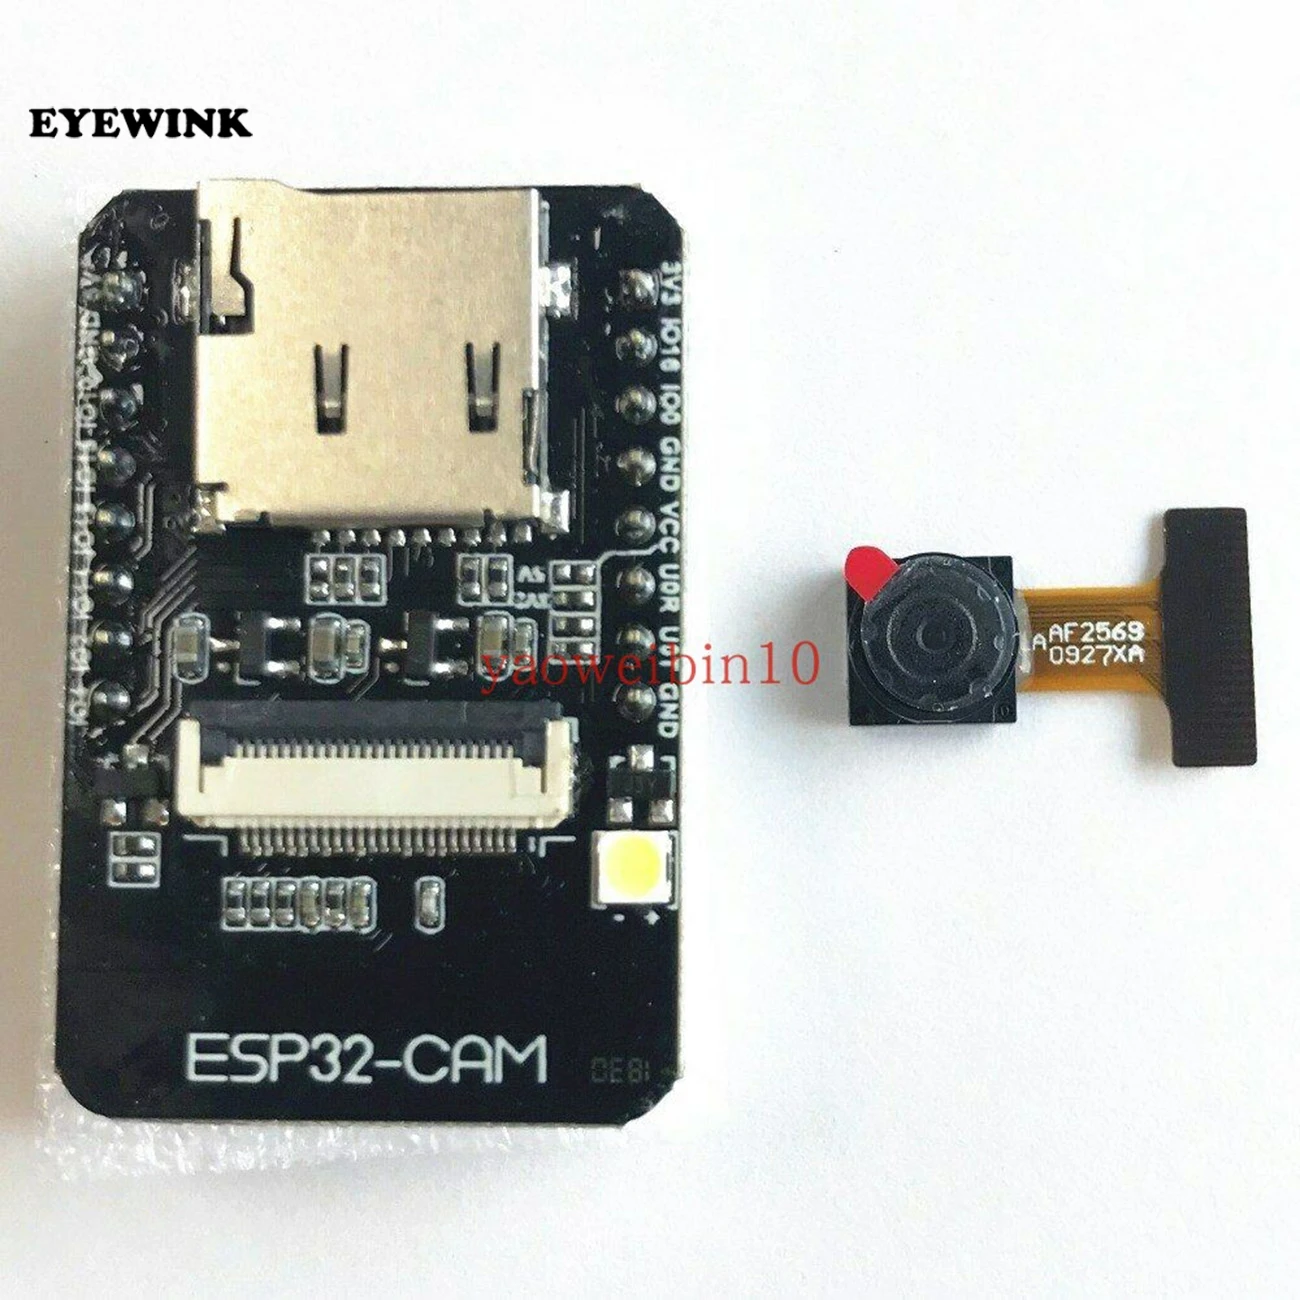 

OV2640 2MP ESP32-CAM WiFi + Bluetooth Module Camera Module Development Board ESP32 5V Dual-core 32-bit CPU with Camera Module